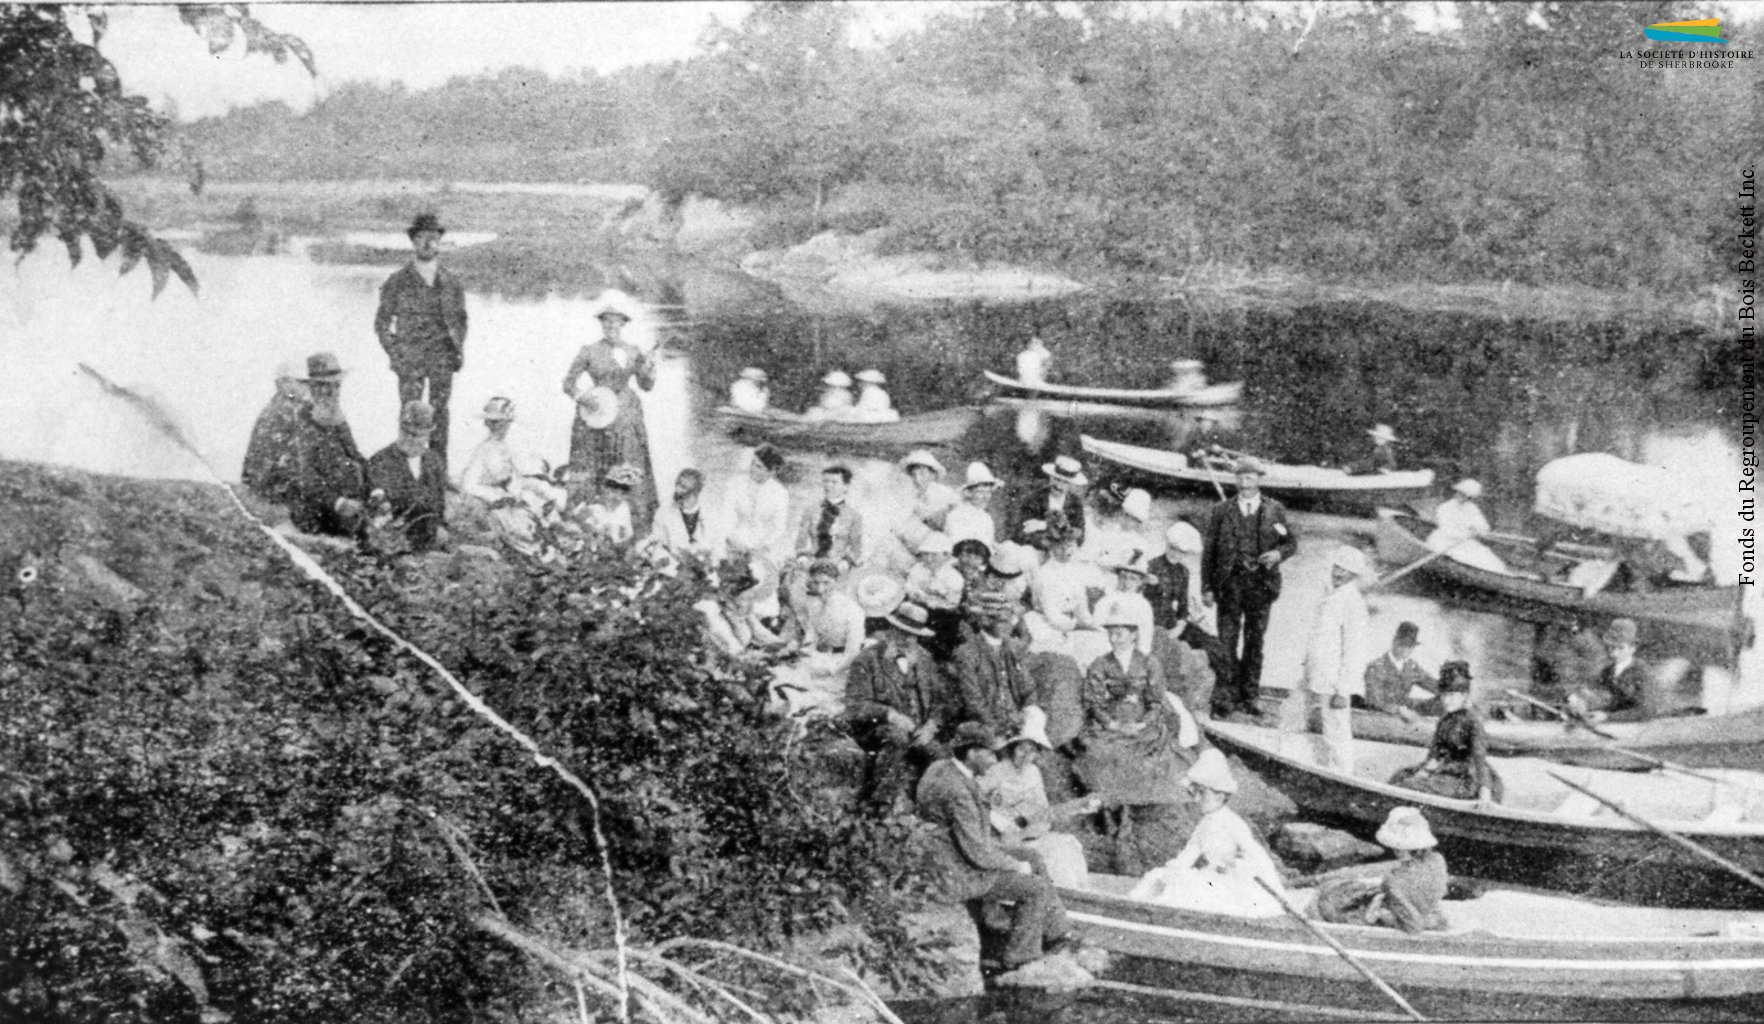 Un groupe de personnes participent à un pique-nique sur les bords de la rivière Saint-François, à proximité de Melbourne, vers 1890. Plusieurs industriels de Sherbrooke organisent chaque année de telles expéditions pour leurs ouvriers.